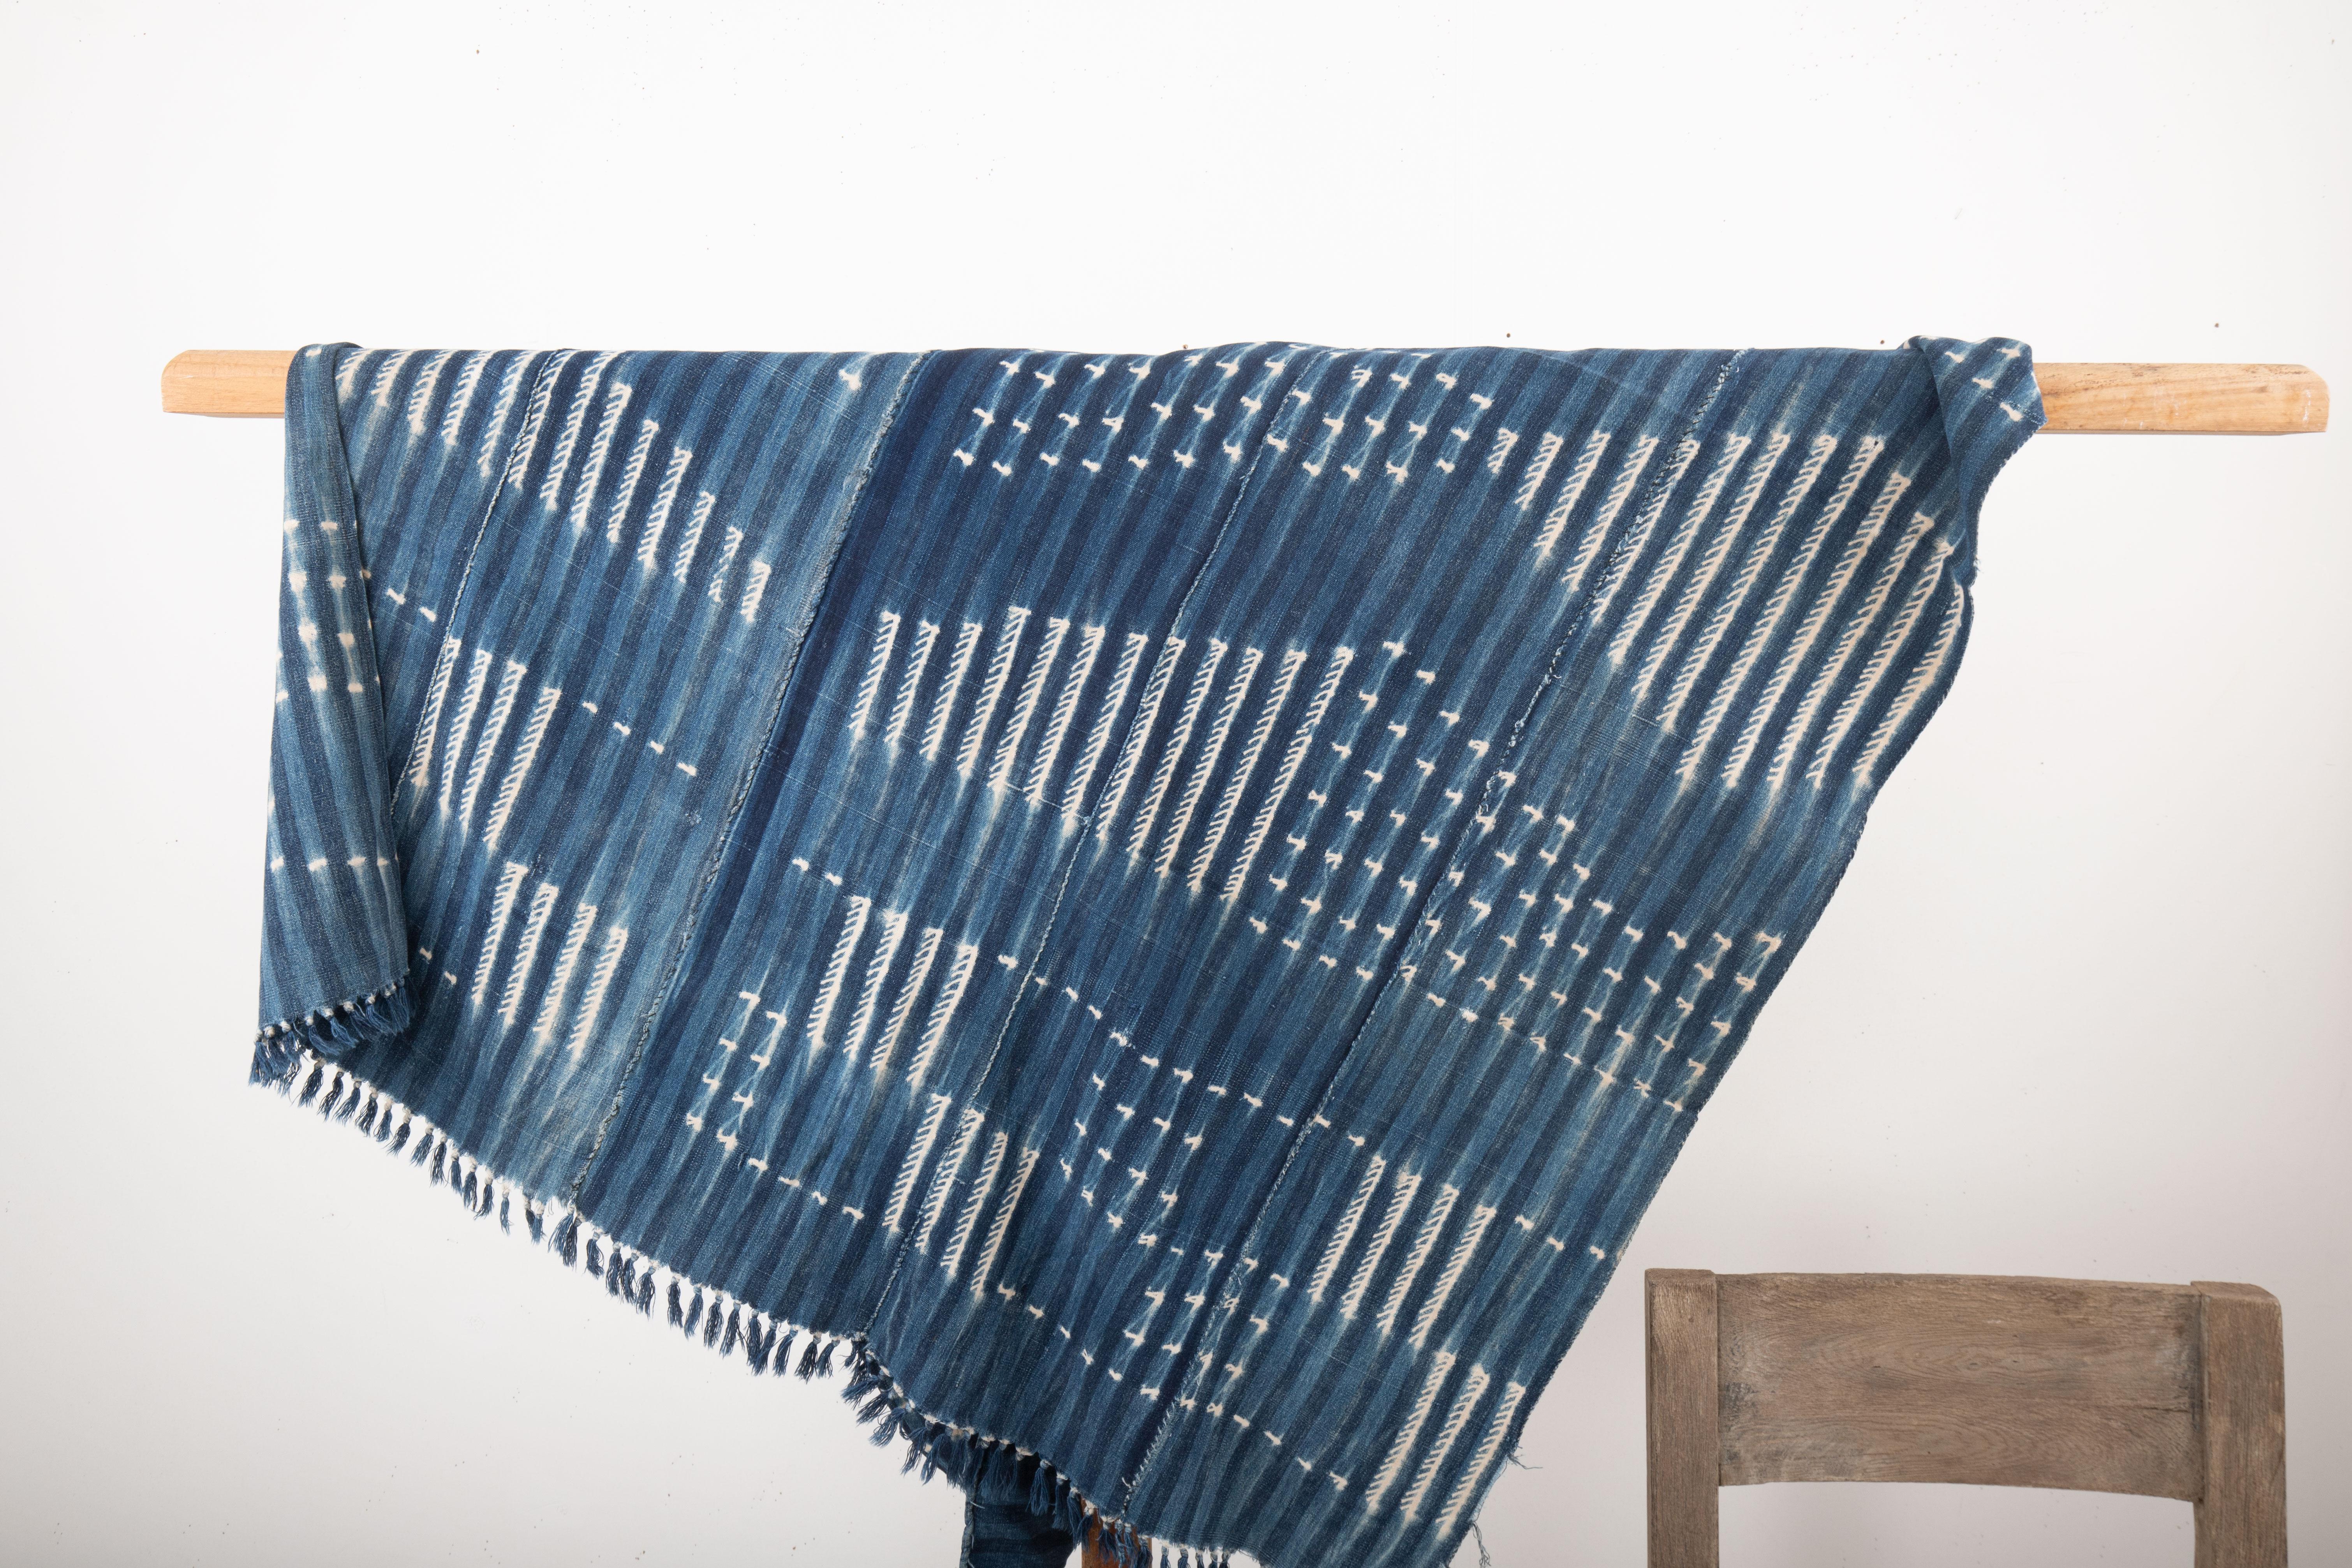 Le tissu indigo du Mali désigne les textiles traditionnels produits au Mali, en Afrique de l'Ouest, à l'aide de la teinture indigo. Ces tissus font partie intégrante du riche patrimoine culturel du Mali et ont acquis une reconnaissance